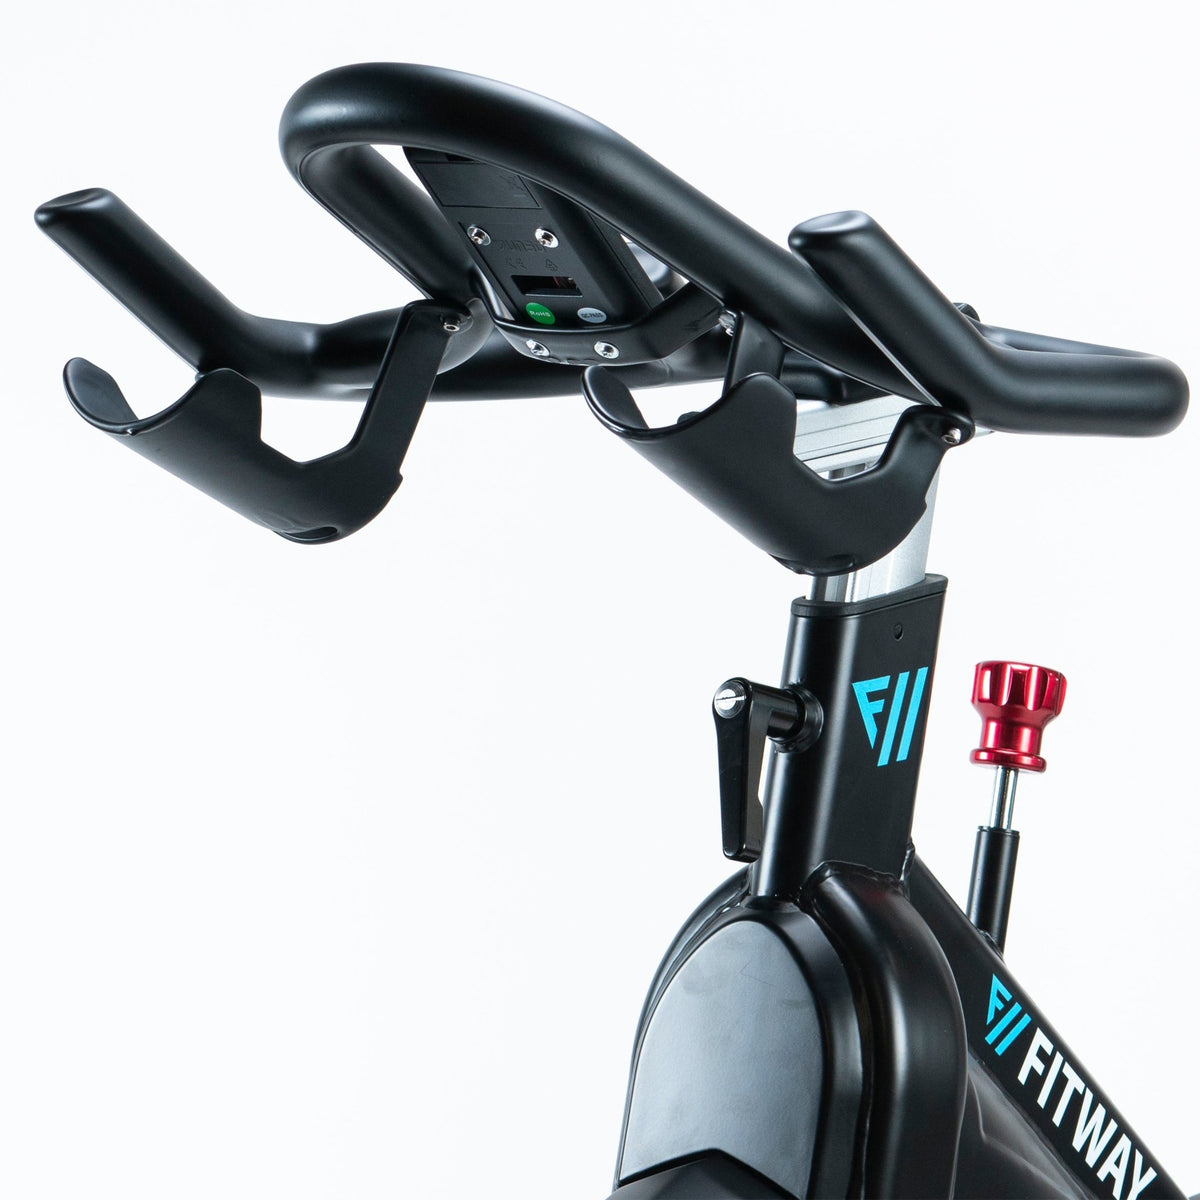 FitWay Equip. 1500IC Indoor Cycle - Handle Bar Design